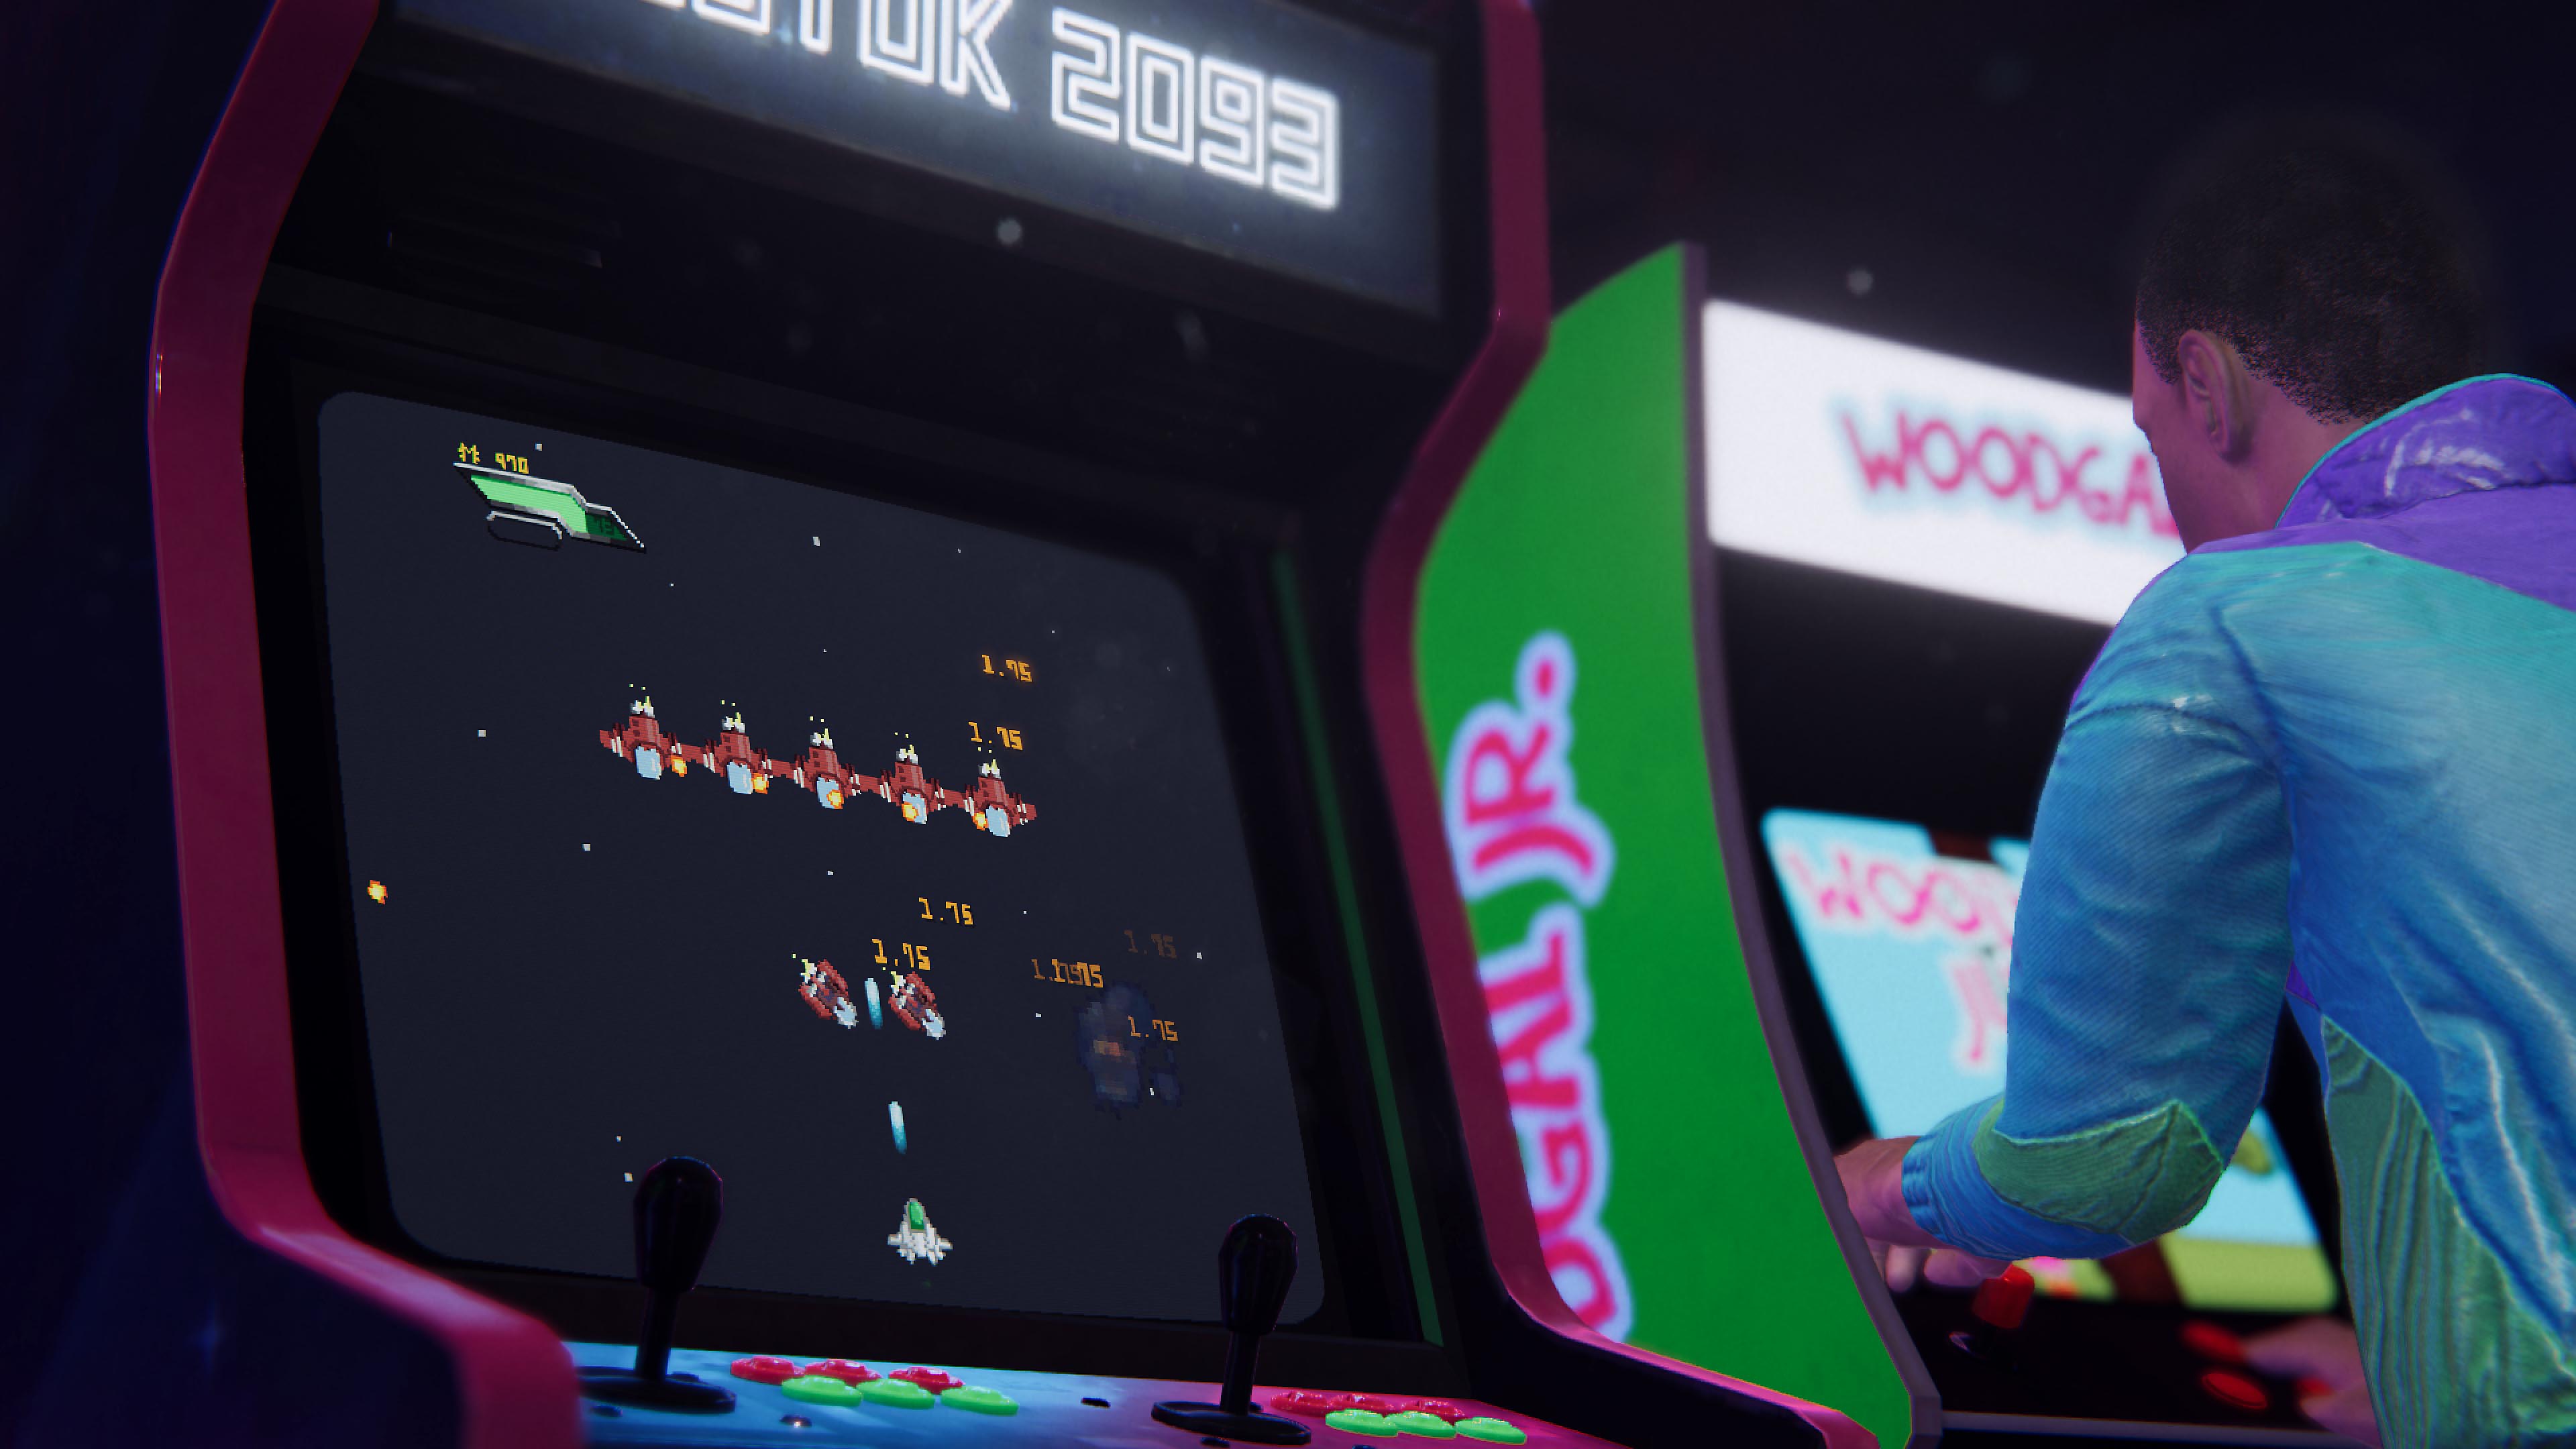 Arcade Paradise - Istantanea della schermata che mostra due cabinati di gioco retrò